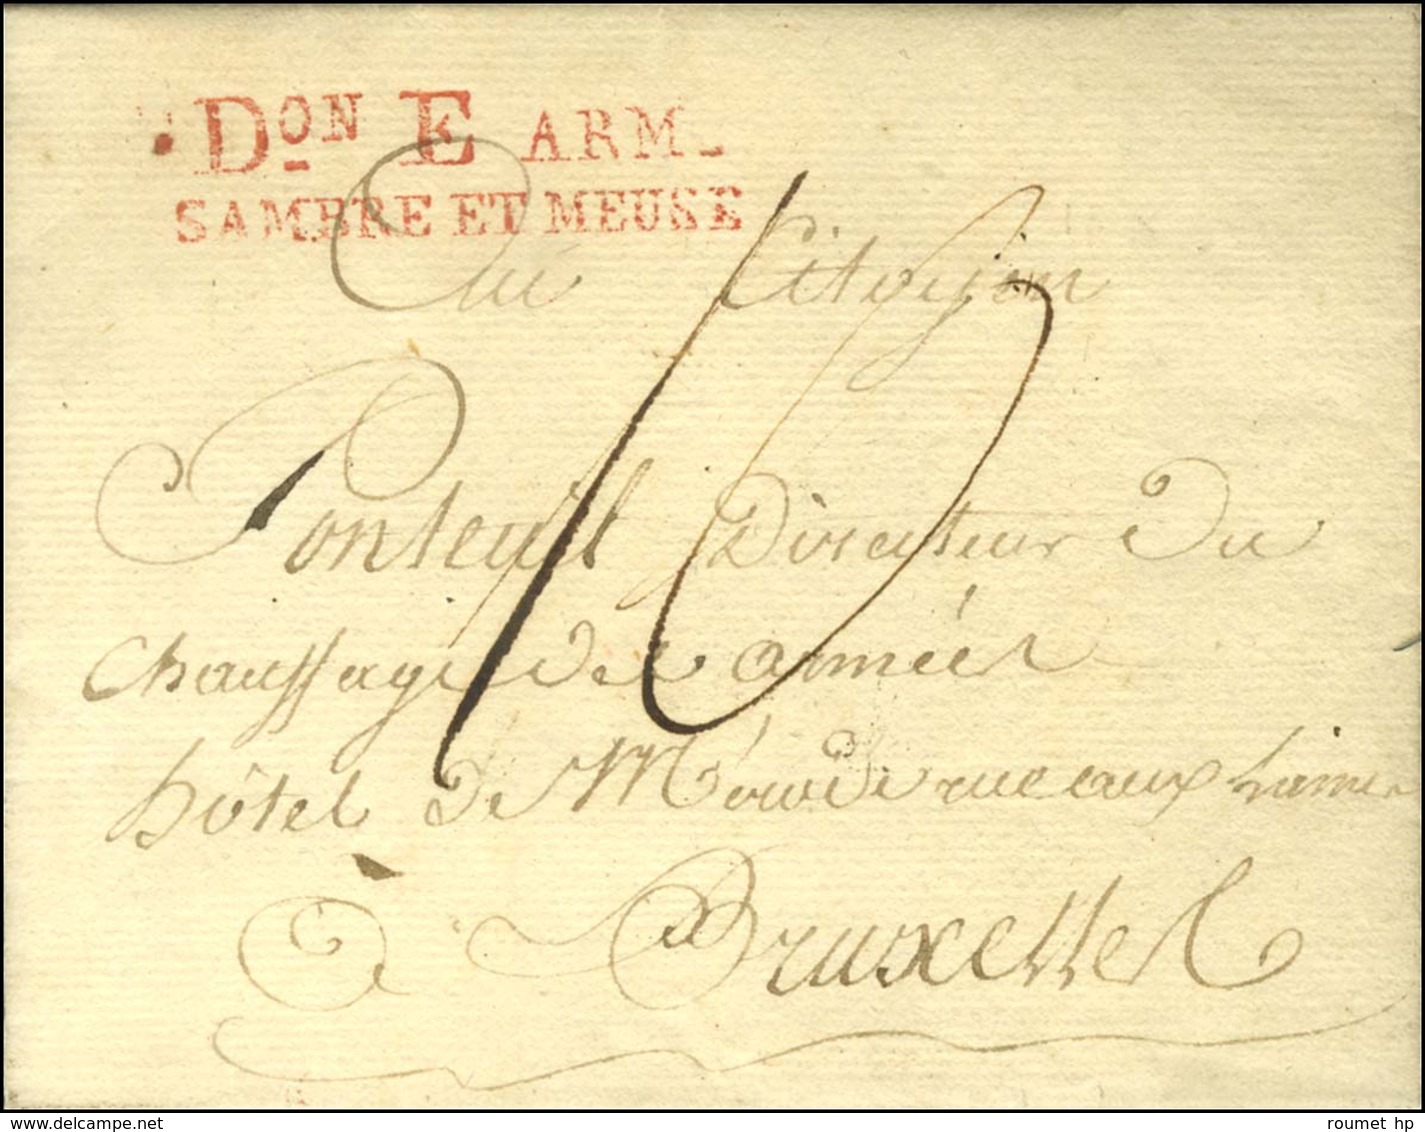 Don E ARM / SAMBRE ET MEUSE Rouge Sur Lettre Avec Texte Daté D'Aix La Chapelle Le 25 Vendémiaire An 4 Pour Bruxelles. -  - Army Postmarks (before 1900)